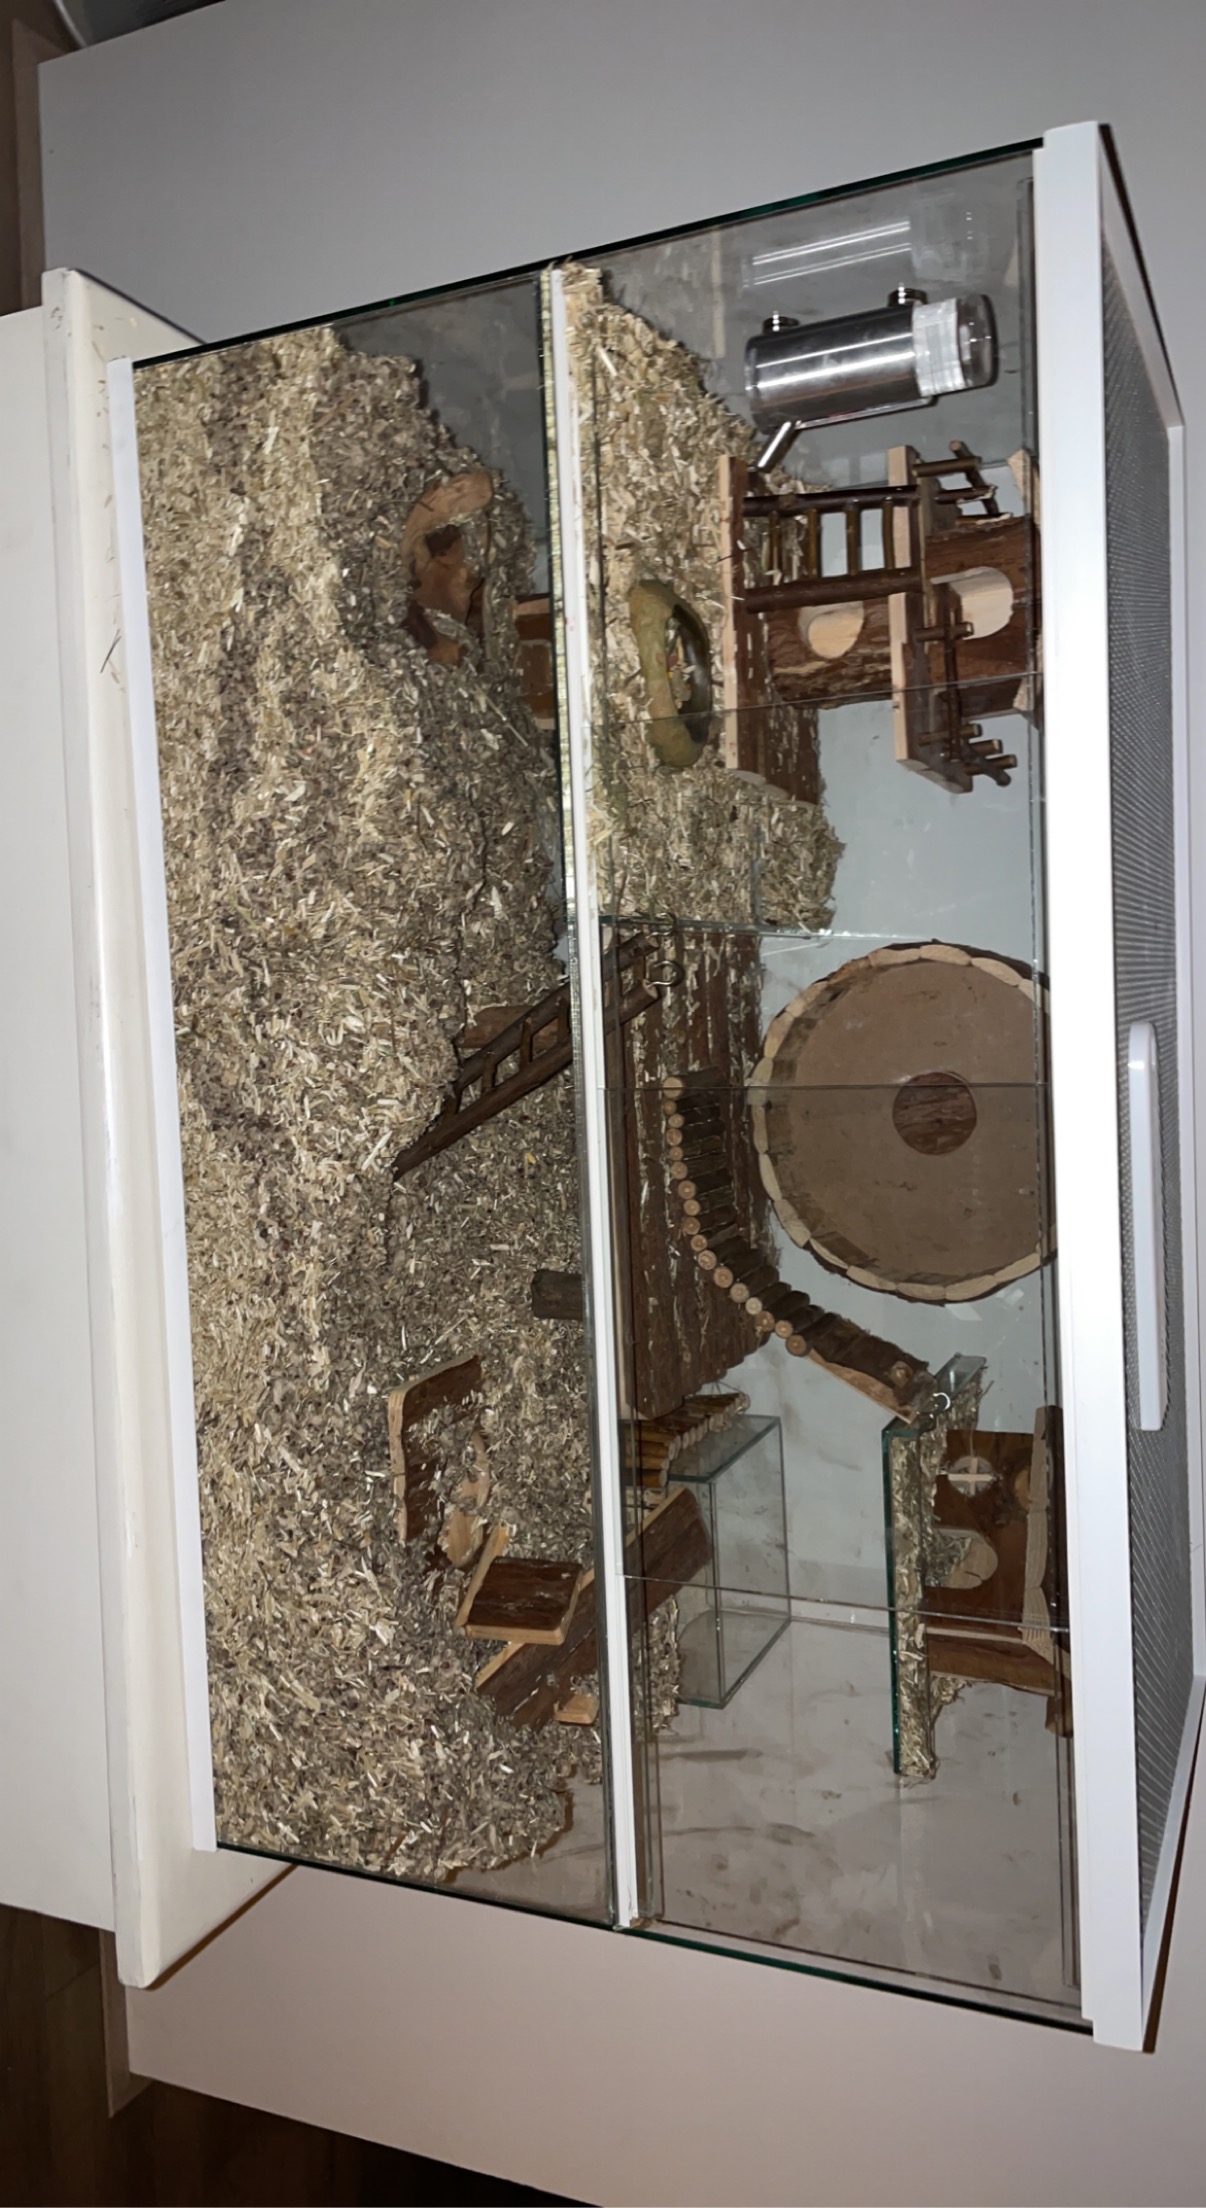 Knaagdieren terrarium van glas met schuifruiten en plateaus